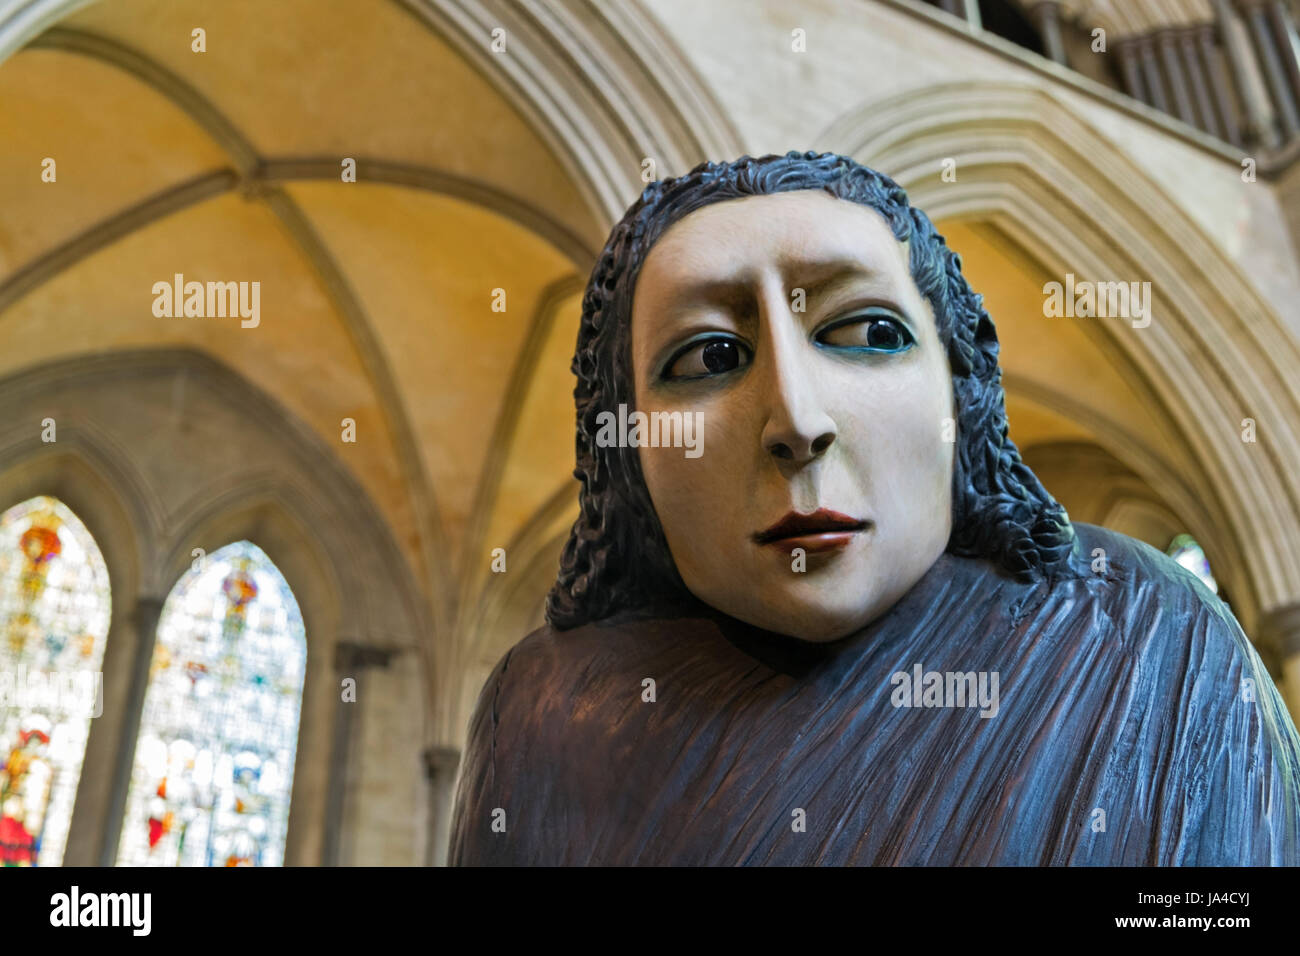 Ombres de la Wanderer statues cathédrale de Salisbury Wiltshire, UK Banque D'Images